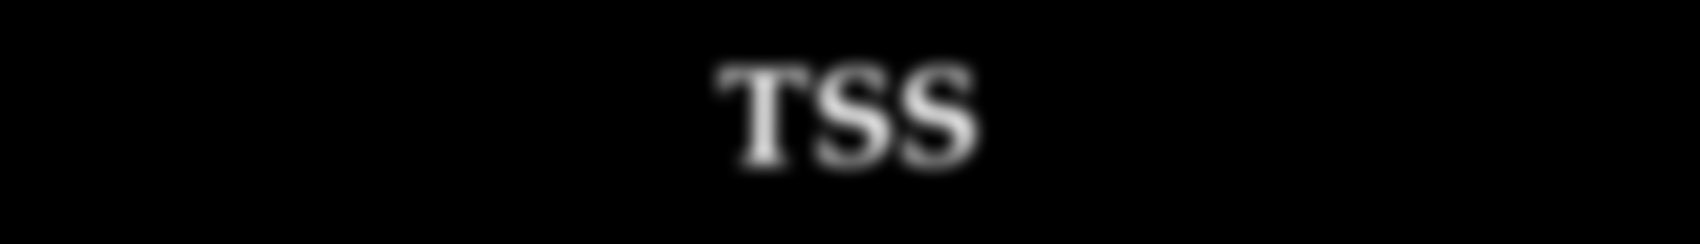 Logopedprogrammet, 2009 TSS